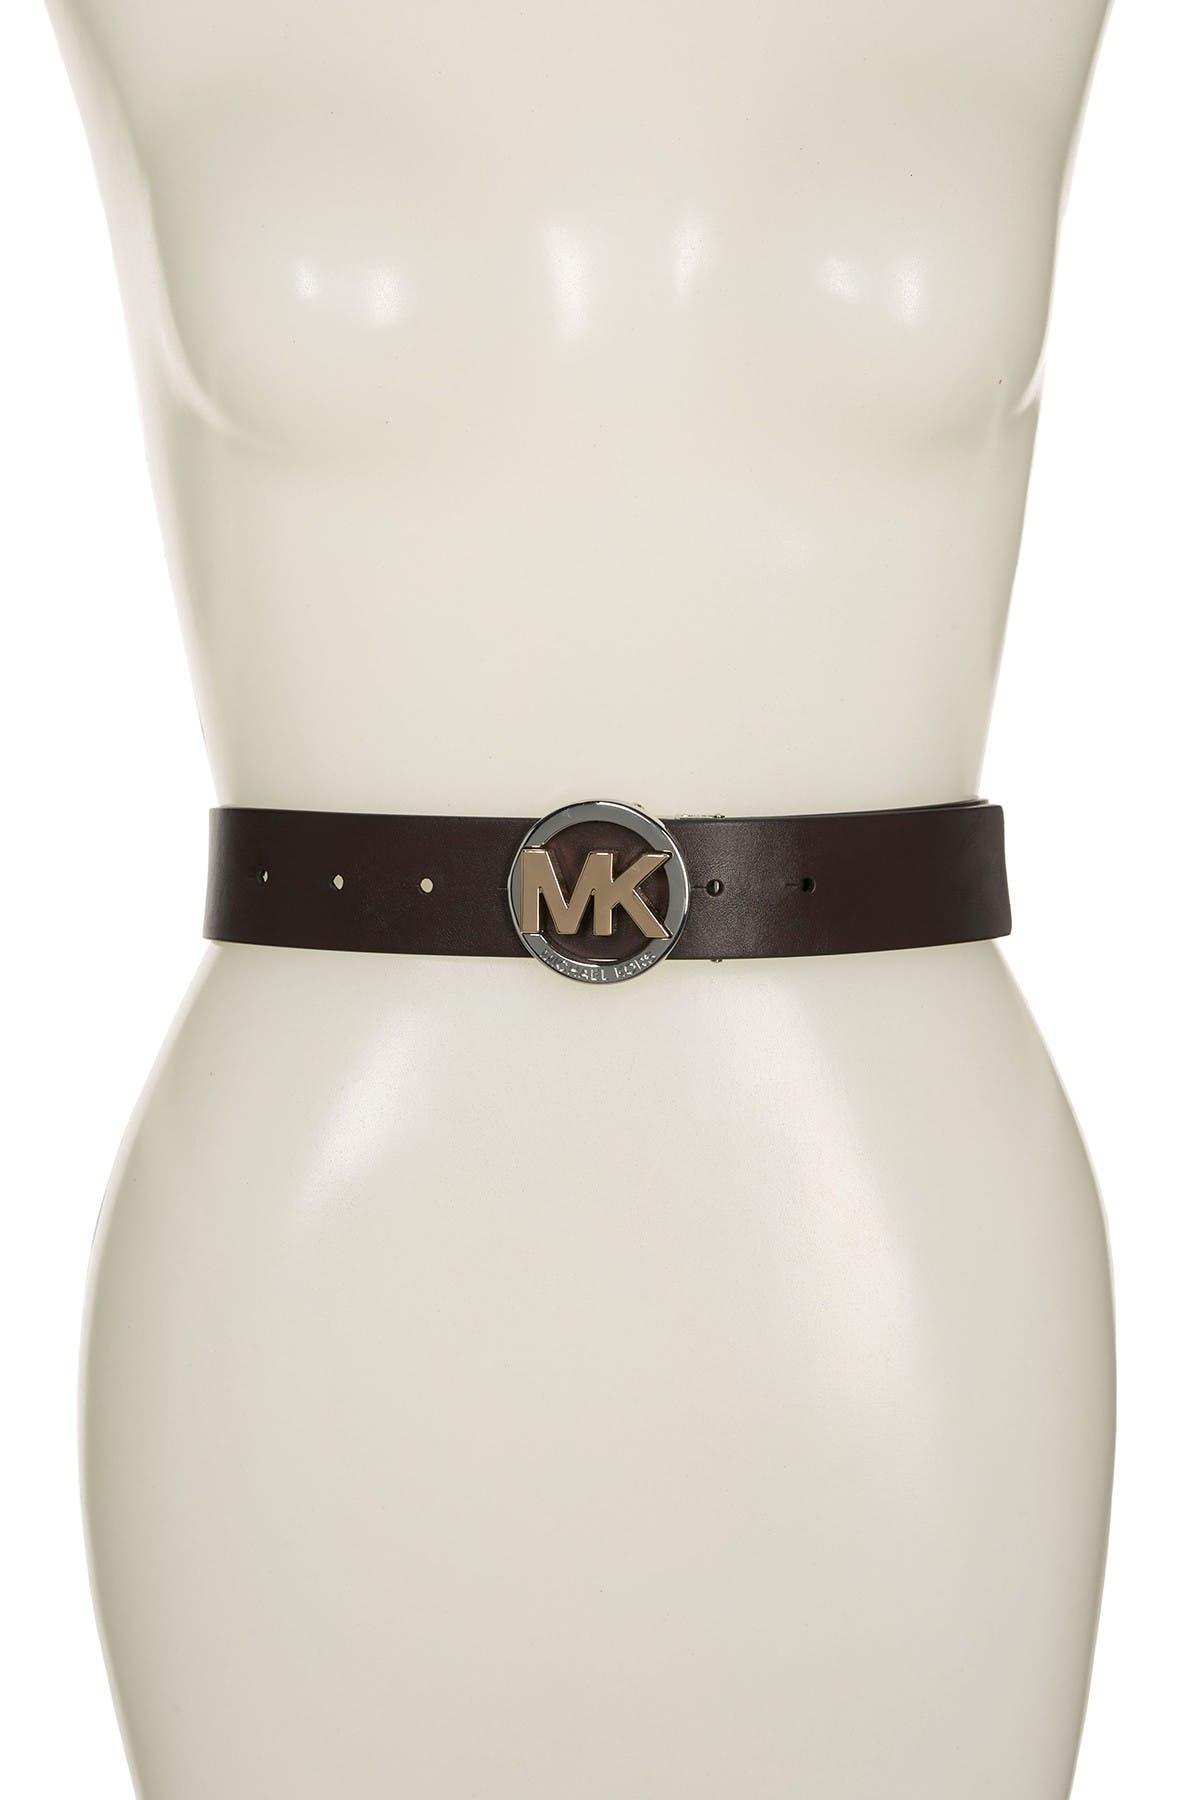 mk designer belt